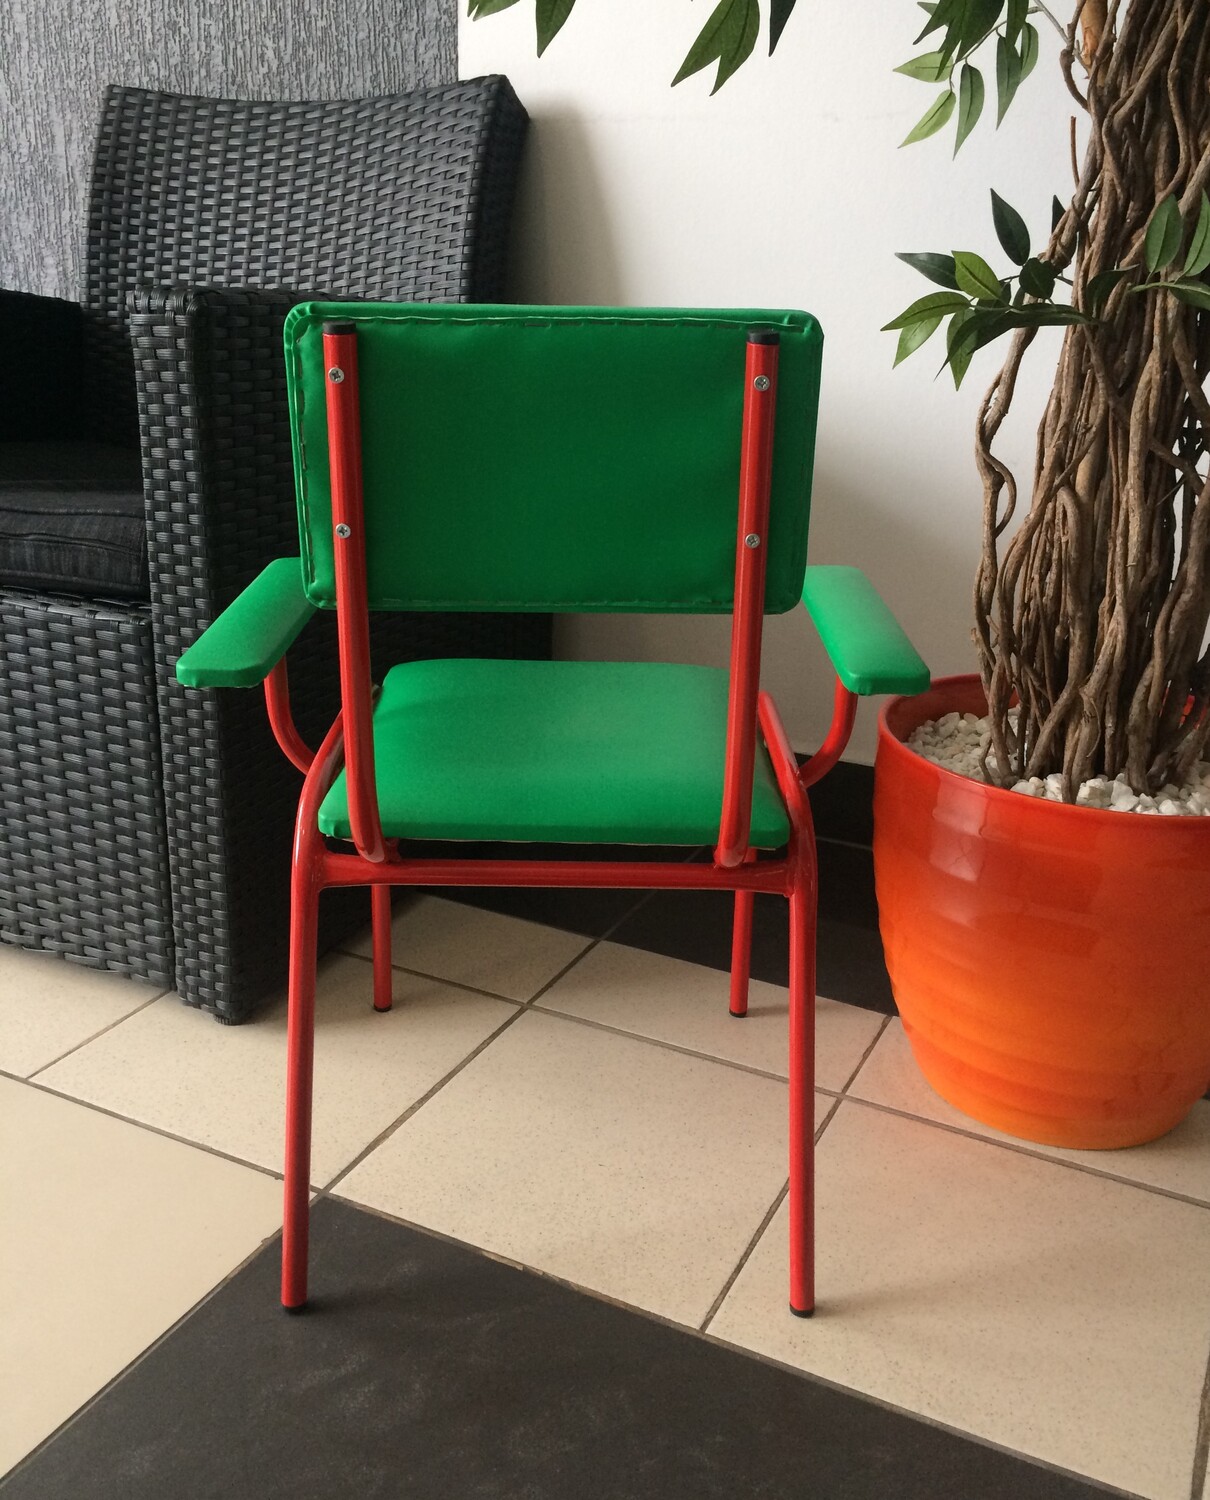 Складной растущий детский стул FORLIKE с подлокотниками, цвет натуральный, прозрачный матовый лак